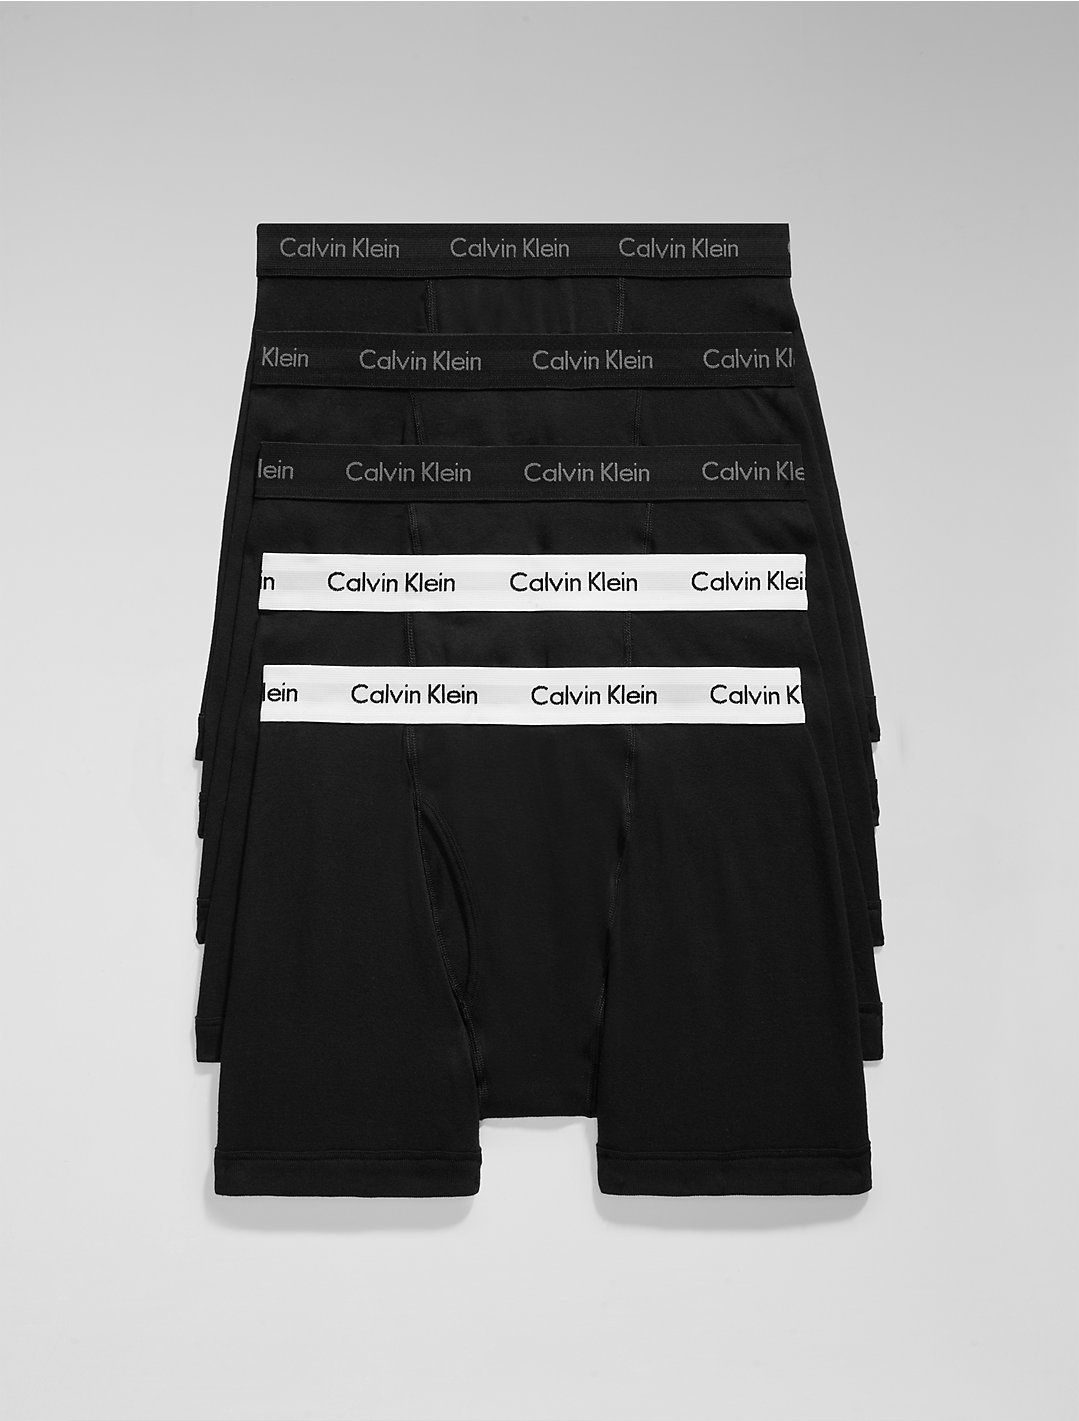 Descubrir 36+ imagen calvin klein black edition underwear